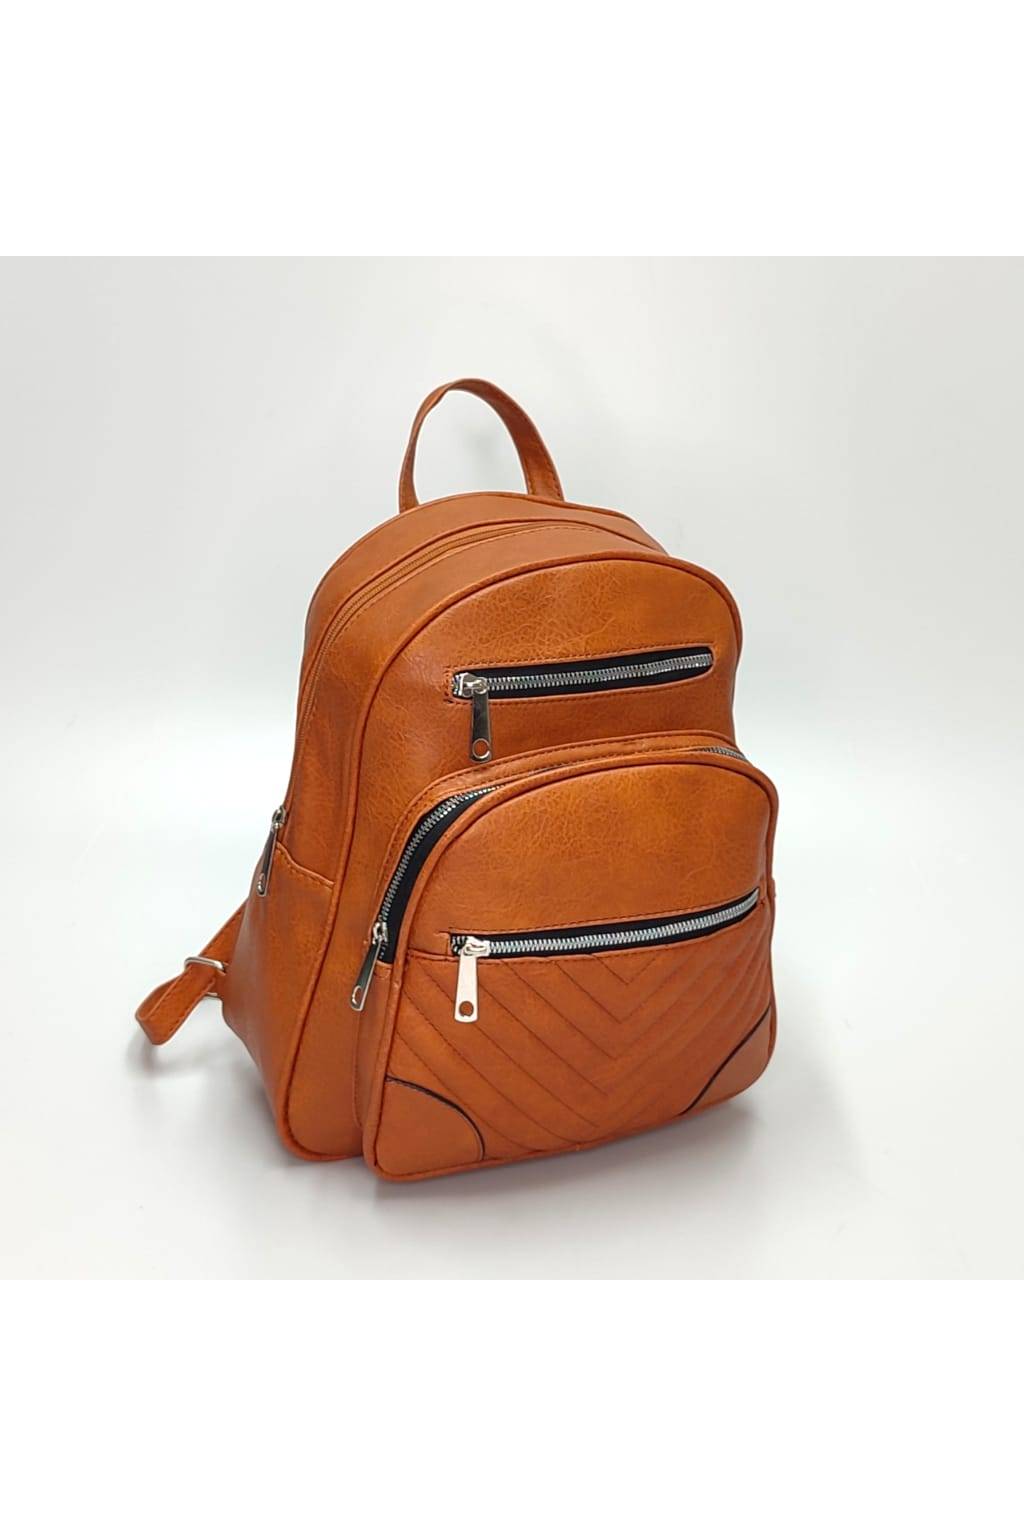 Dámsky ruksak DL0153 hnedý www.kabelky vypredaj (27)